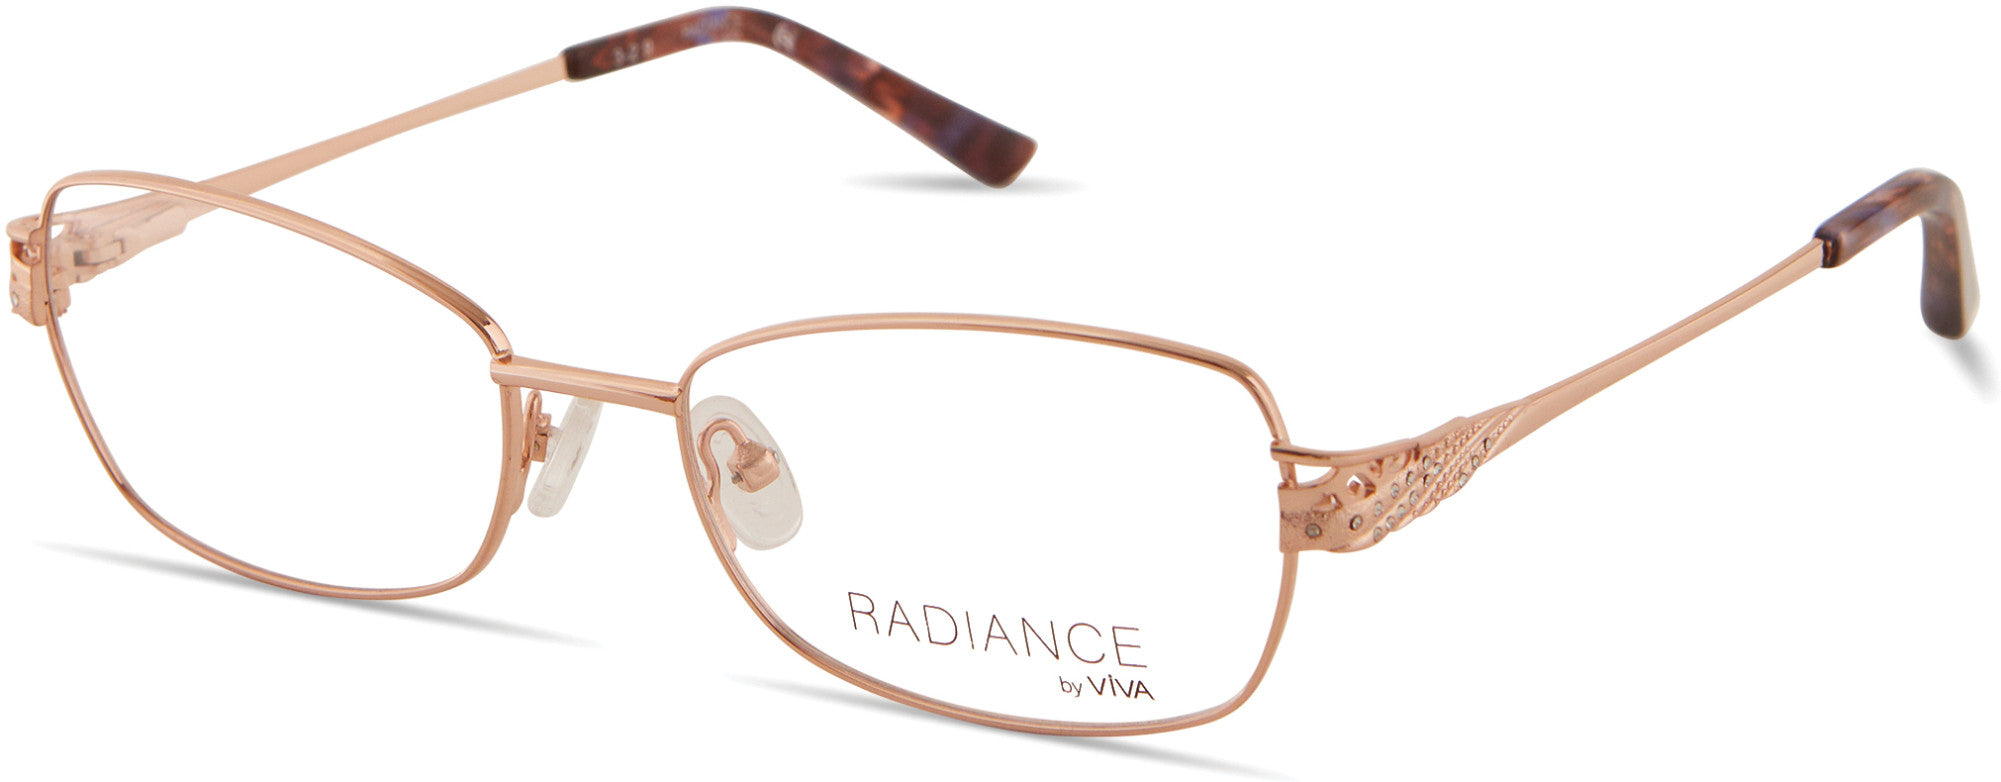 Viva VV8013 Rectangular Eyeglasses 028-028 - Shiny Rose Gold